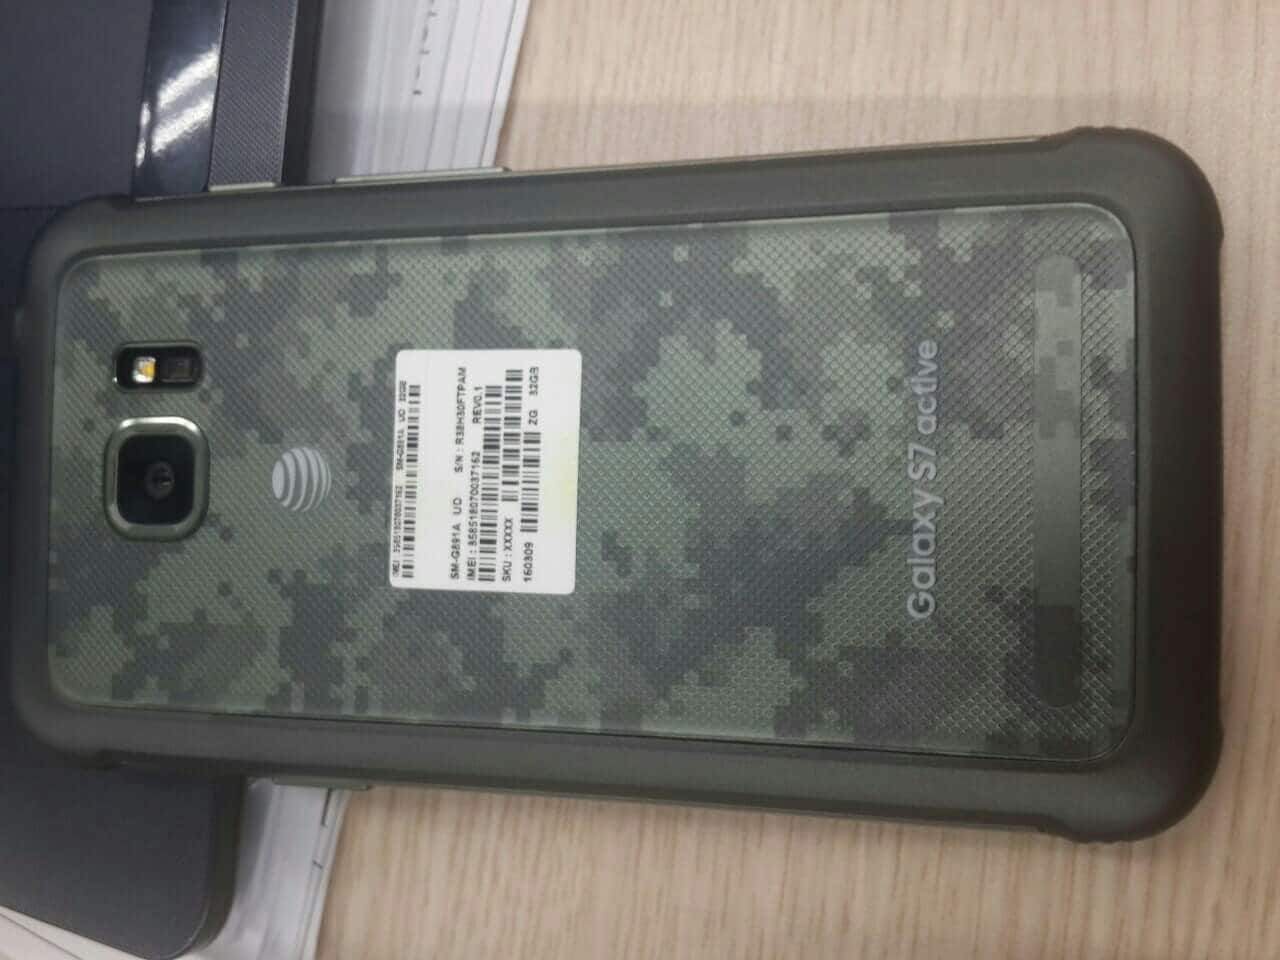 Active, la variante di Galaxy S7 che non ha bisogno di una cover, si mostra nelle prime foto